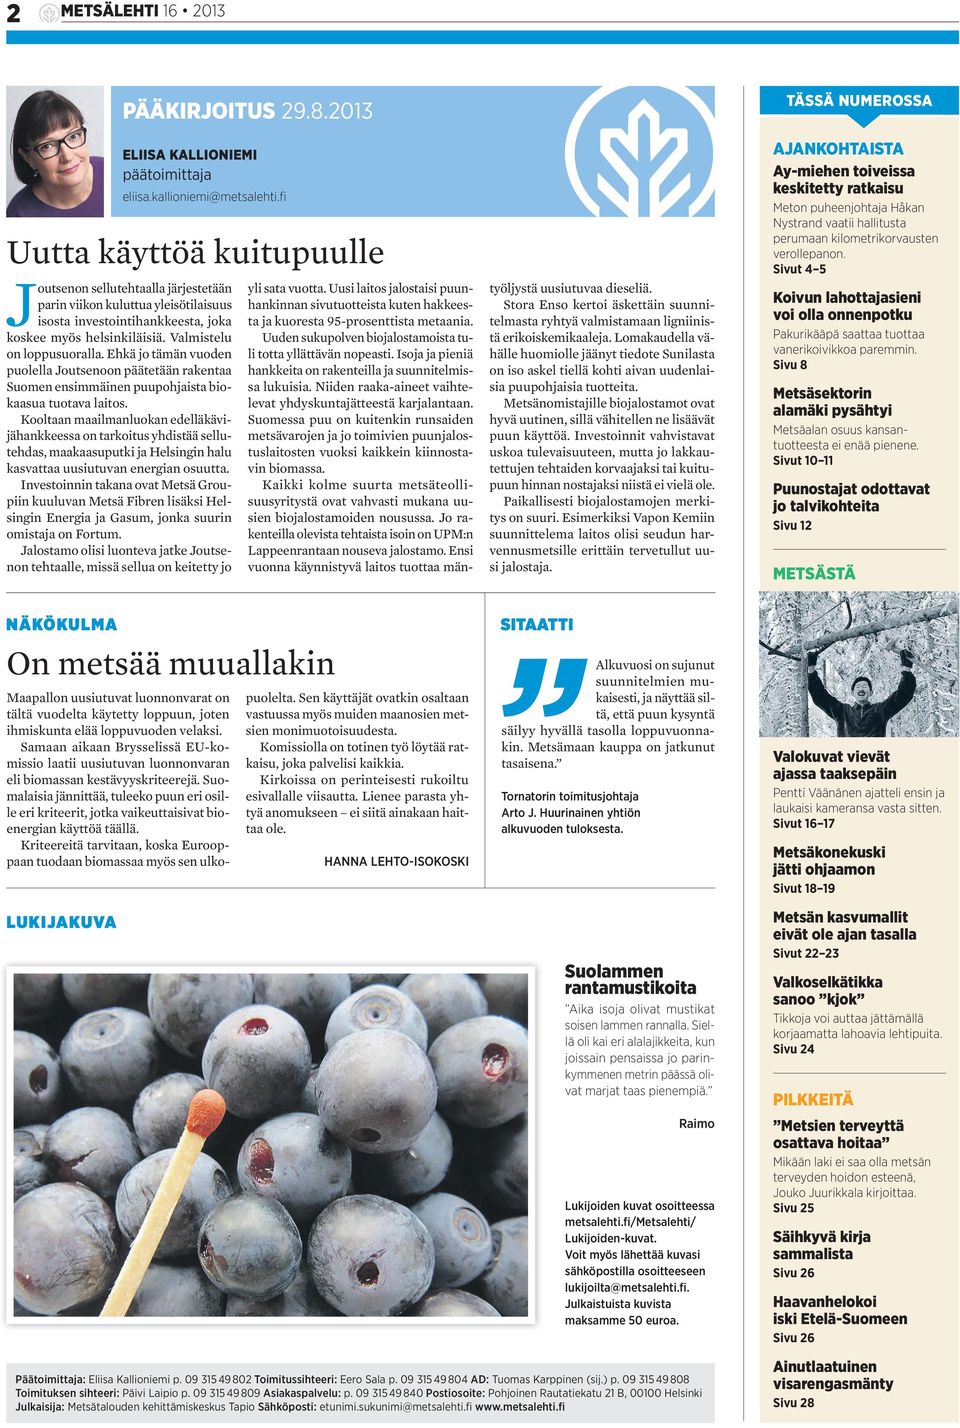 Ehkä jo tämän vuoden puolella Joutsenoon päätetään rakentaa Suomen ensimmäinen puupohjaista biokaasua tuotava laitos.